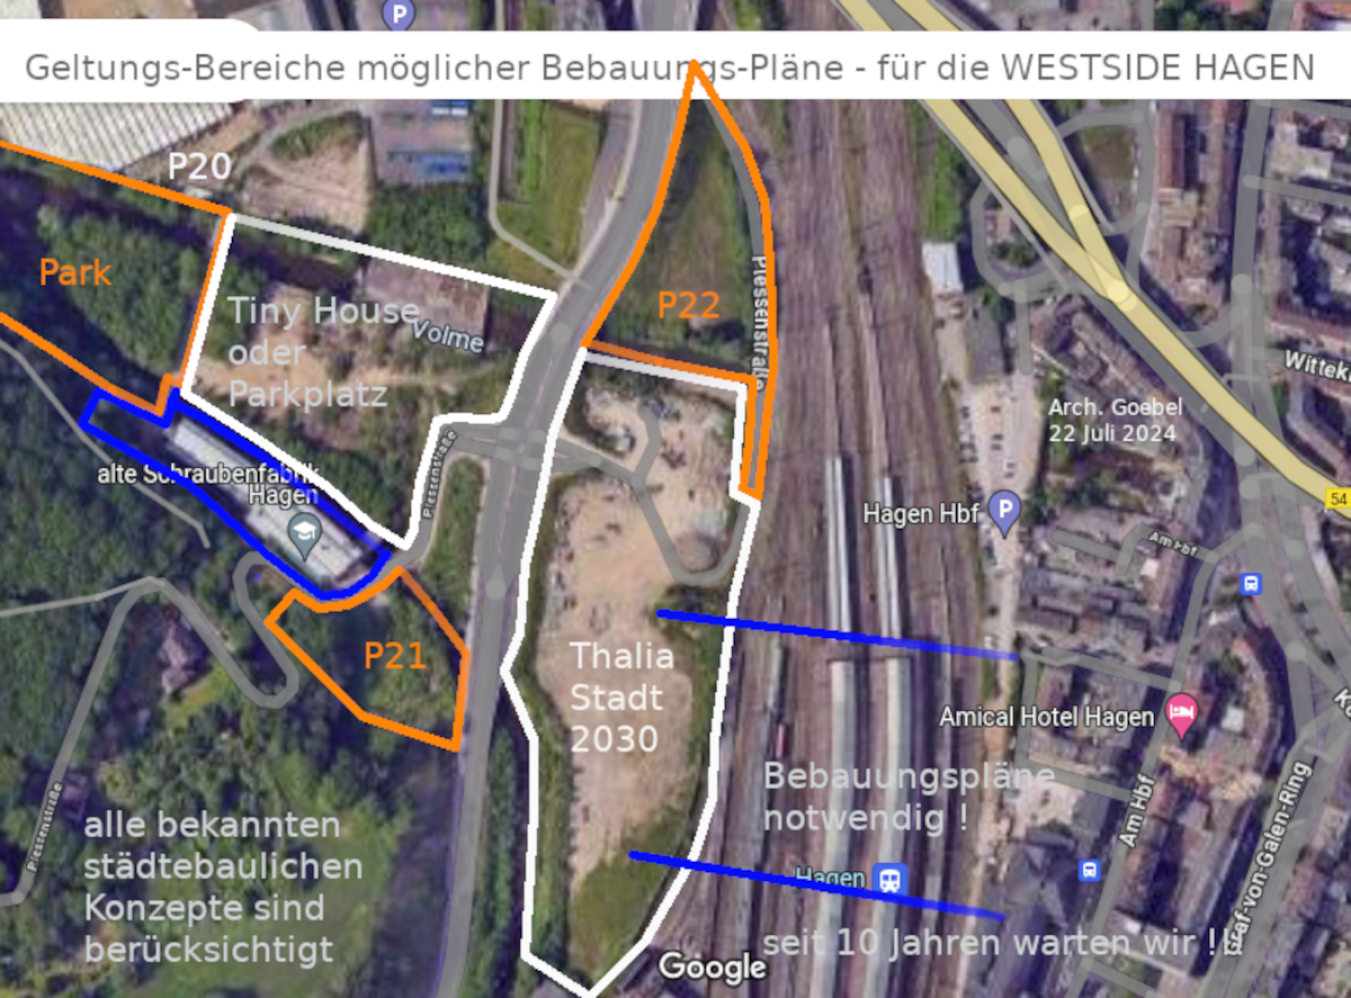 Bebauungspläne Westside Hagen seit 10 Jahren nicht vorhanden